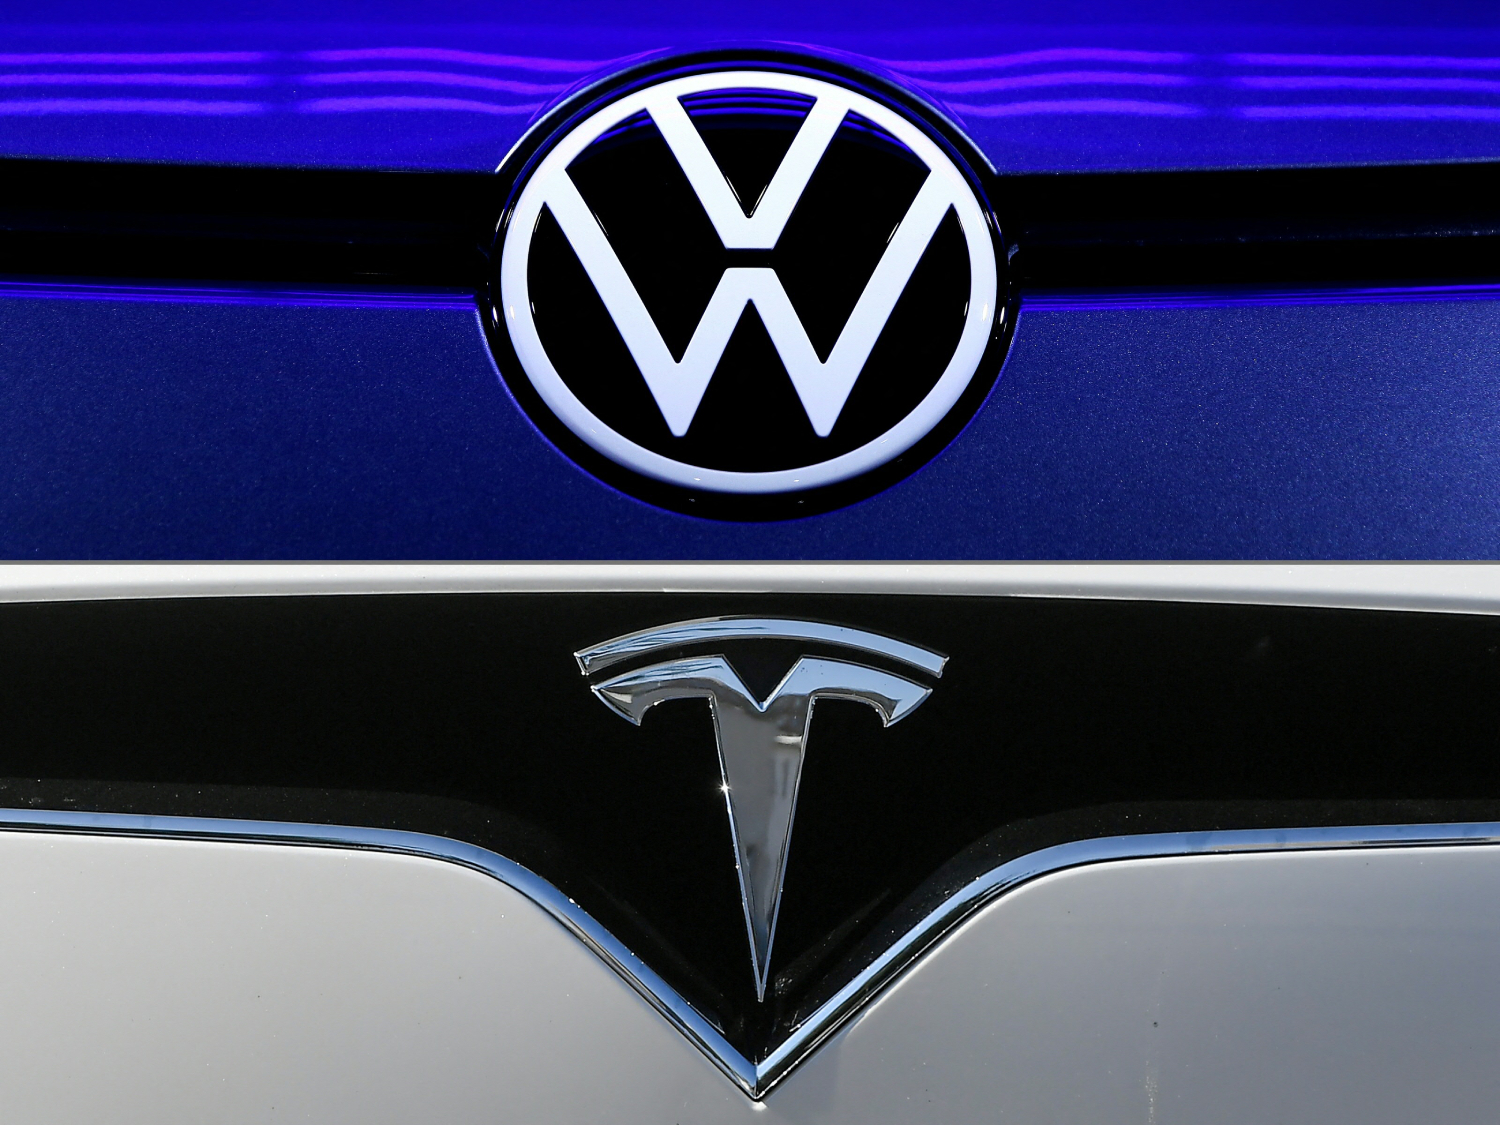 Tesla and Volkswagen logos